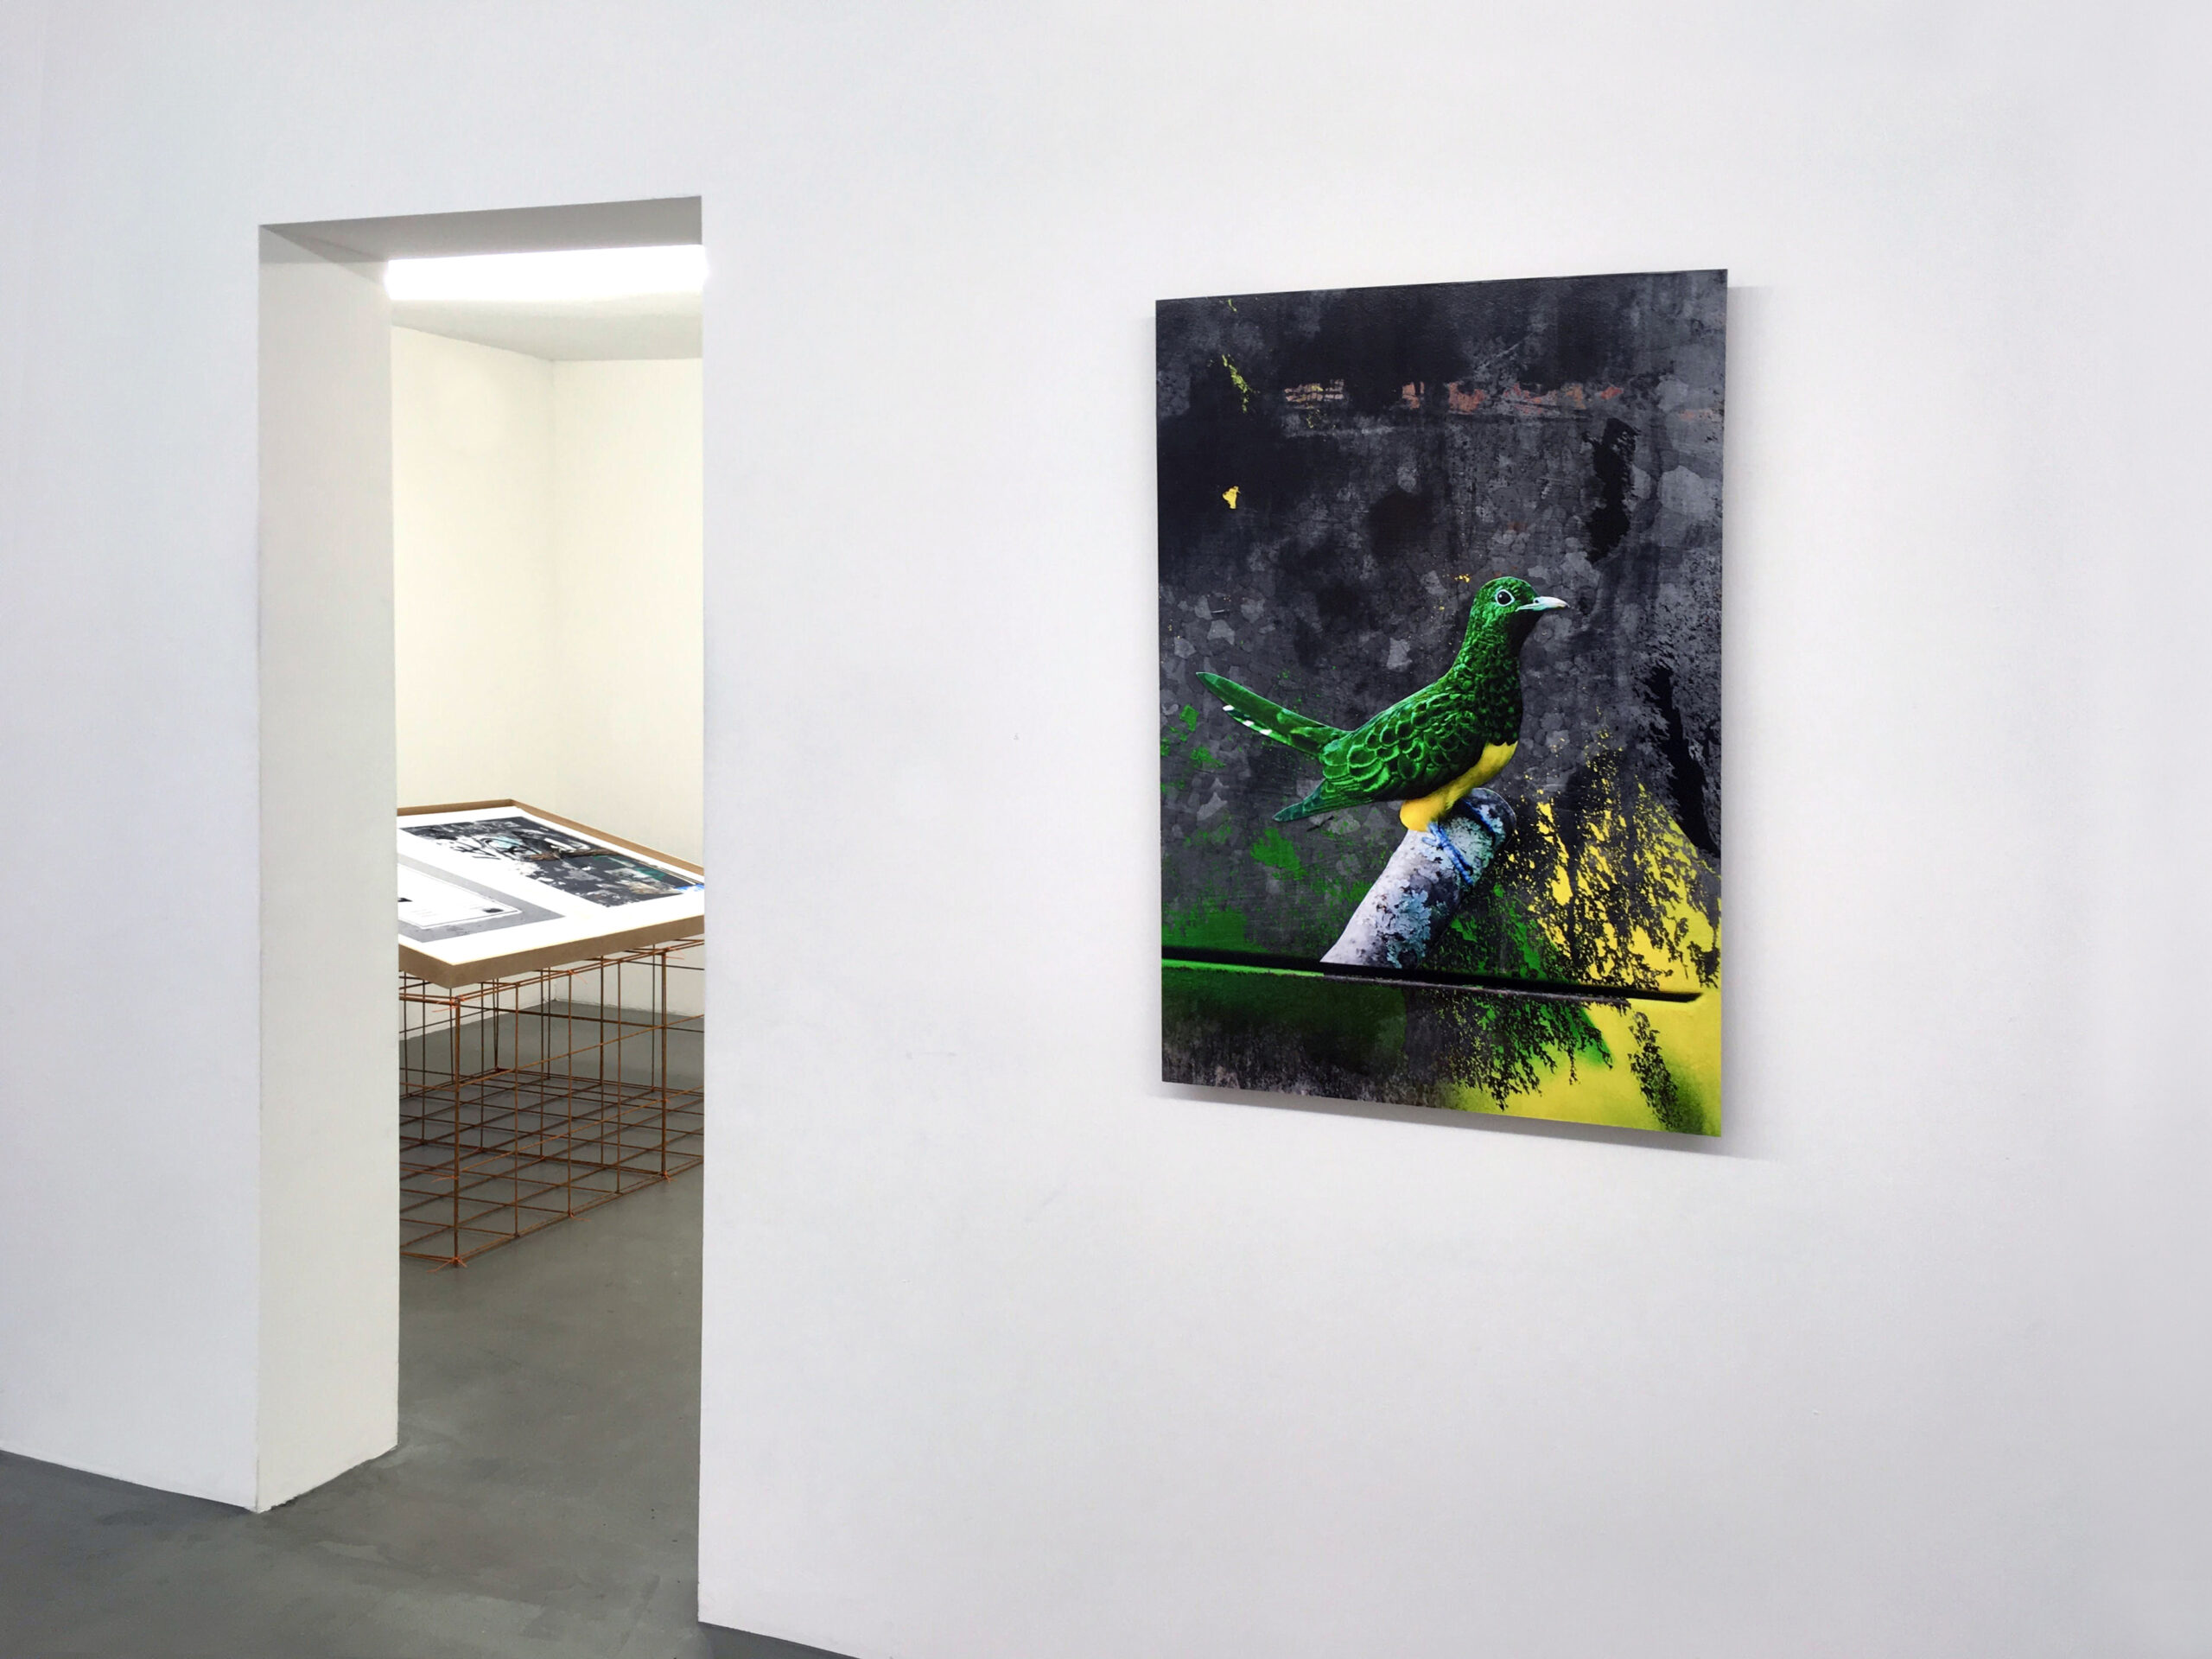 Konstnären Erik Berglin, visar fotografi på inkjet prints. Utställning på Galleri Thomassen. The Bird Project.